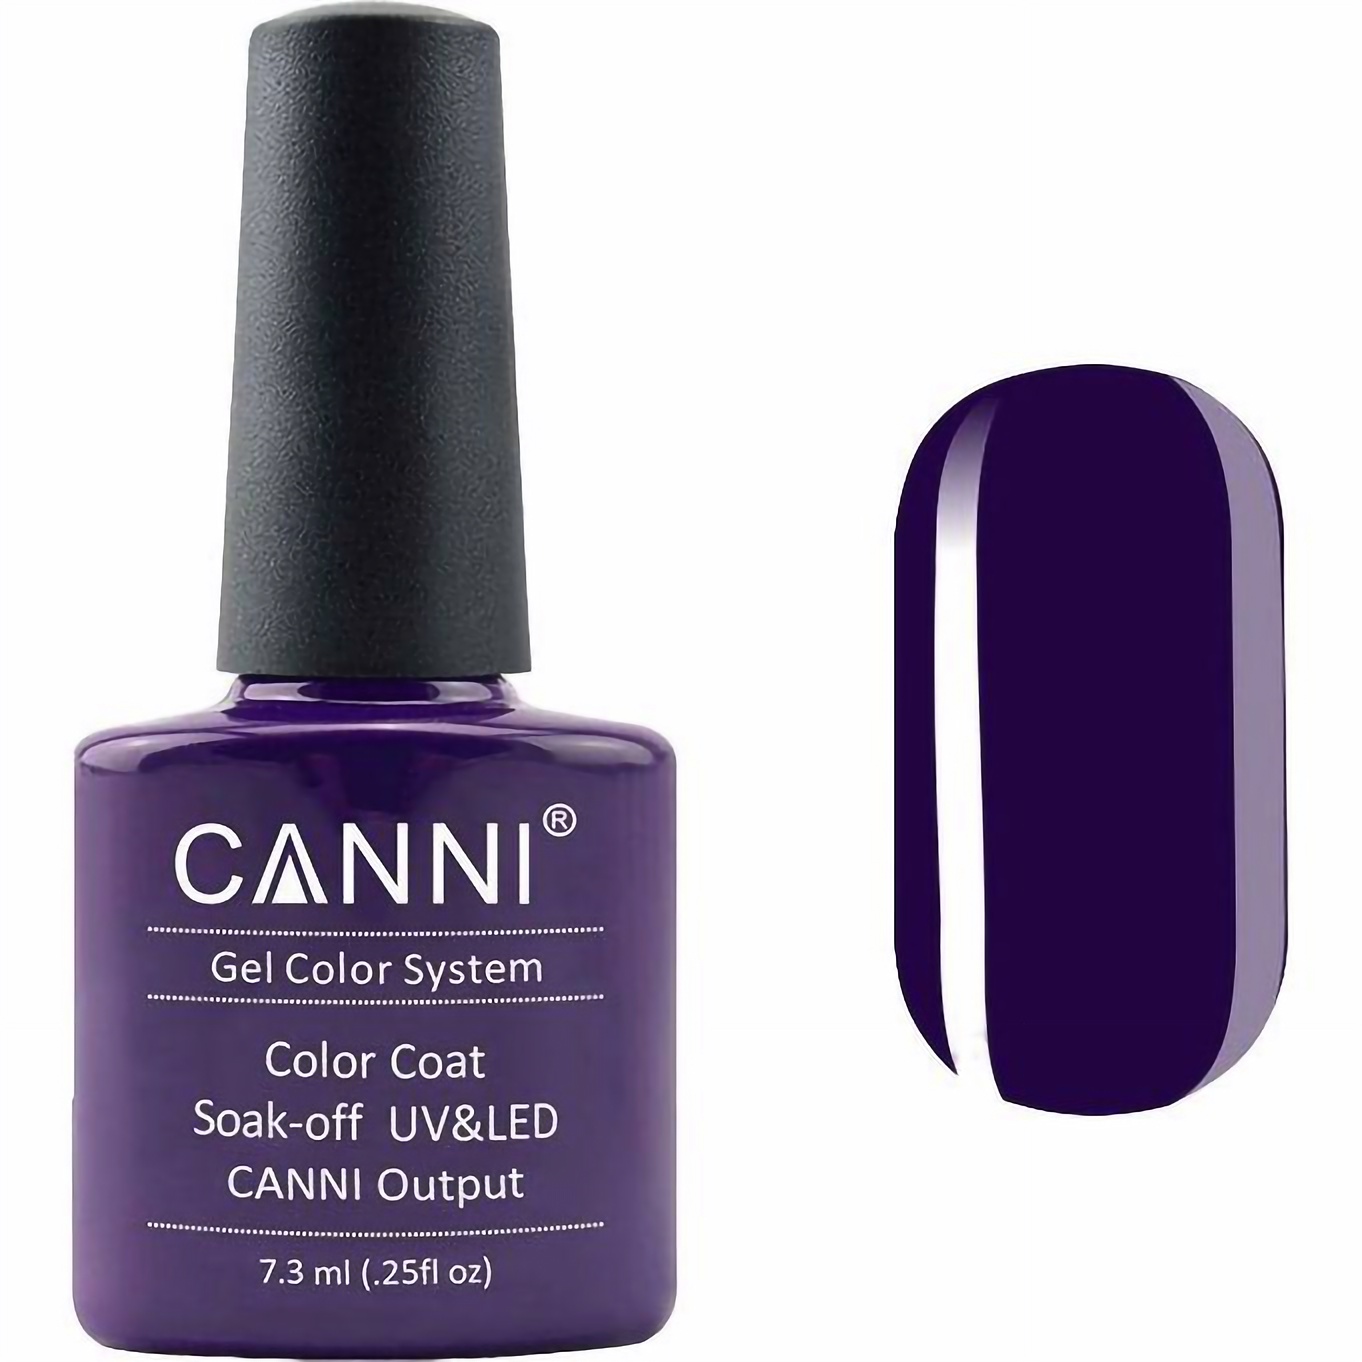 Гель-лак Canni Color Coat Soak-off UV&LED 176 темно-баклажановый 7.3 мл - фото 1